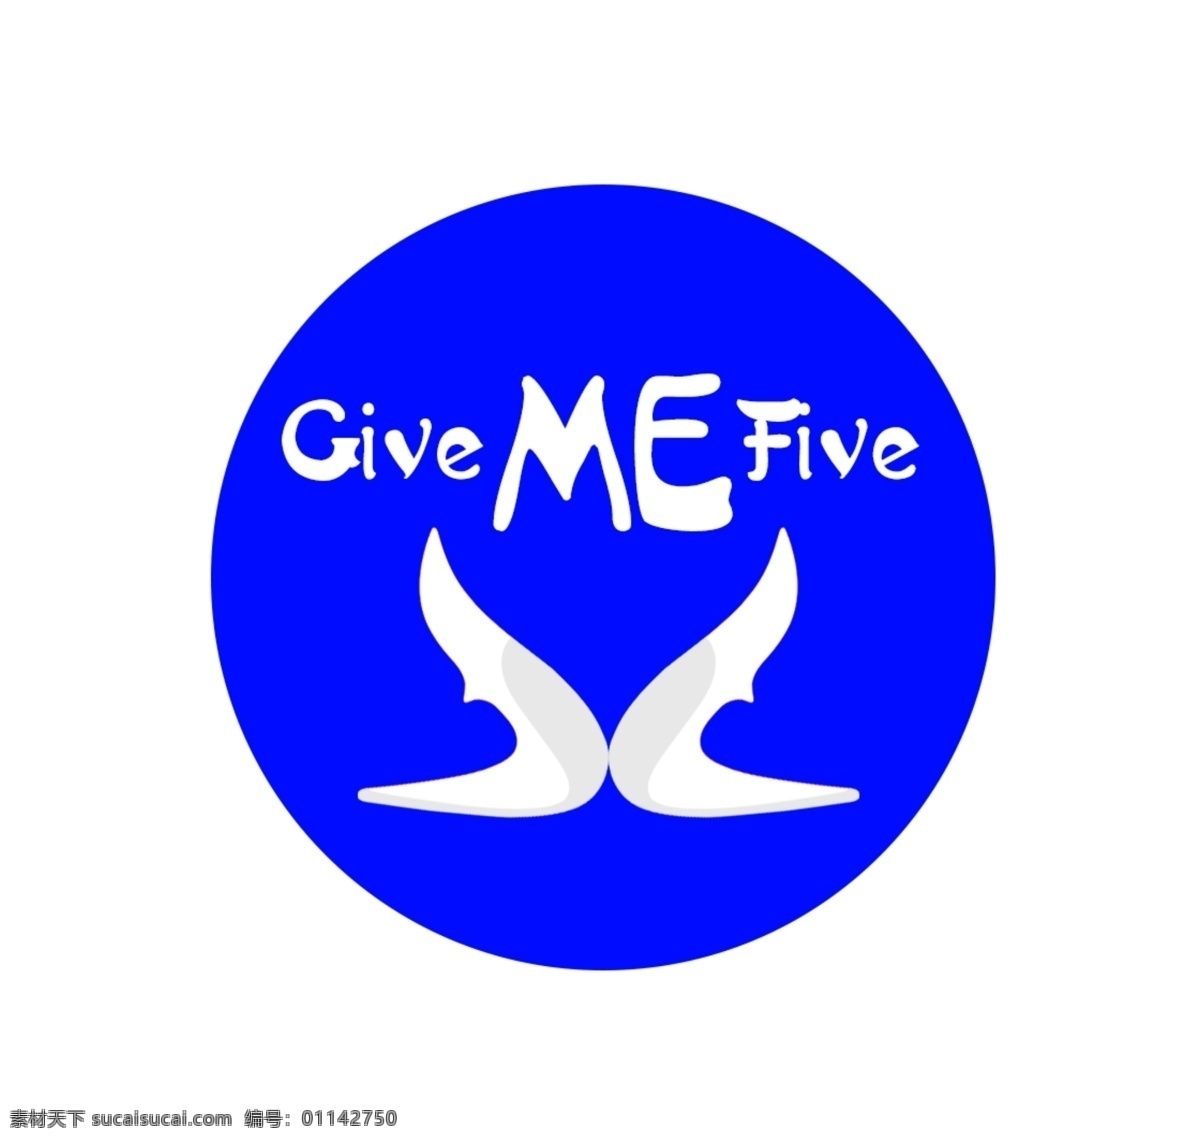 设计give me five 的logo give logo 淘宝素材 淘宝设计 淘宝模板下载 白色